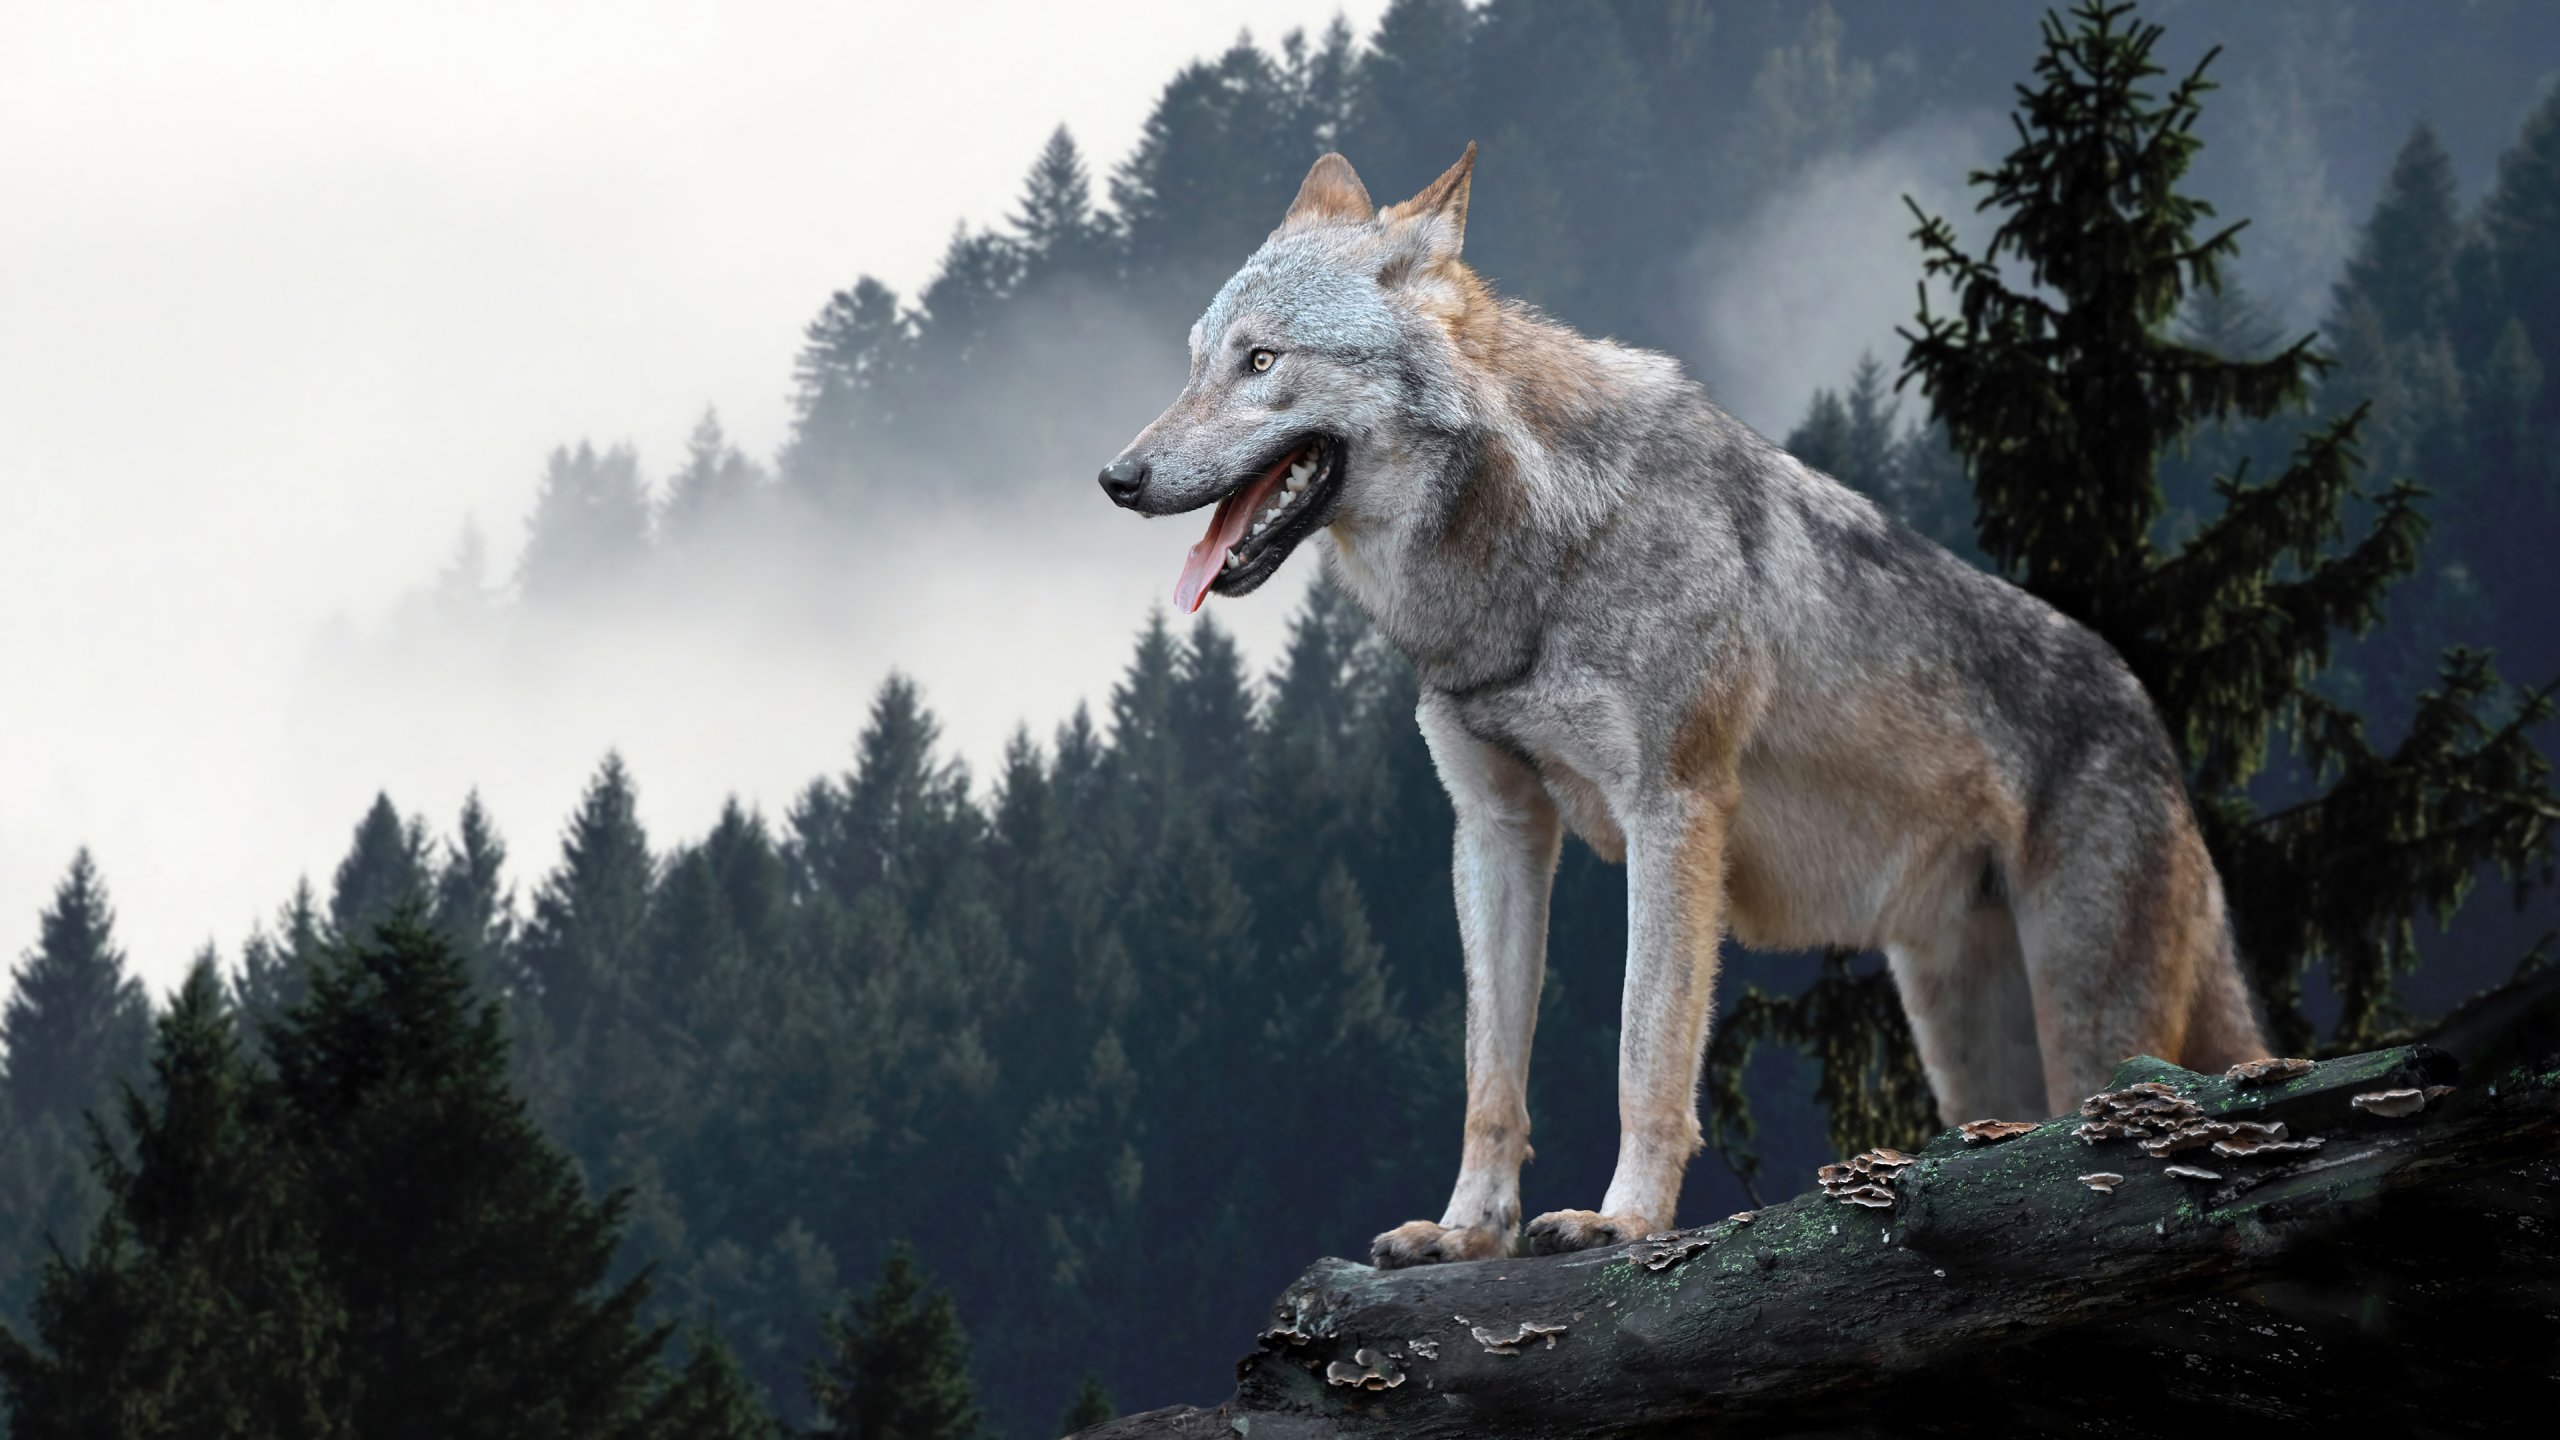 720p Wolf Wallpapers #720p #Wolf #Wallpapers | Wolf wallpaper, Iphone  wallpaper wolf, Eagle wallpaper